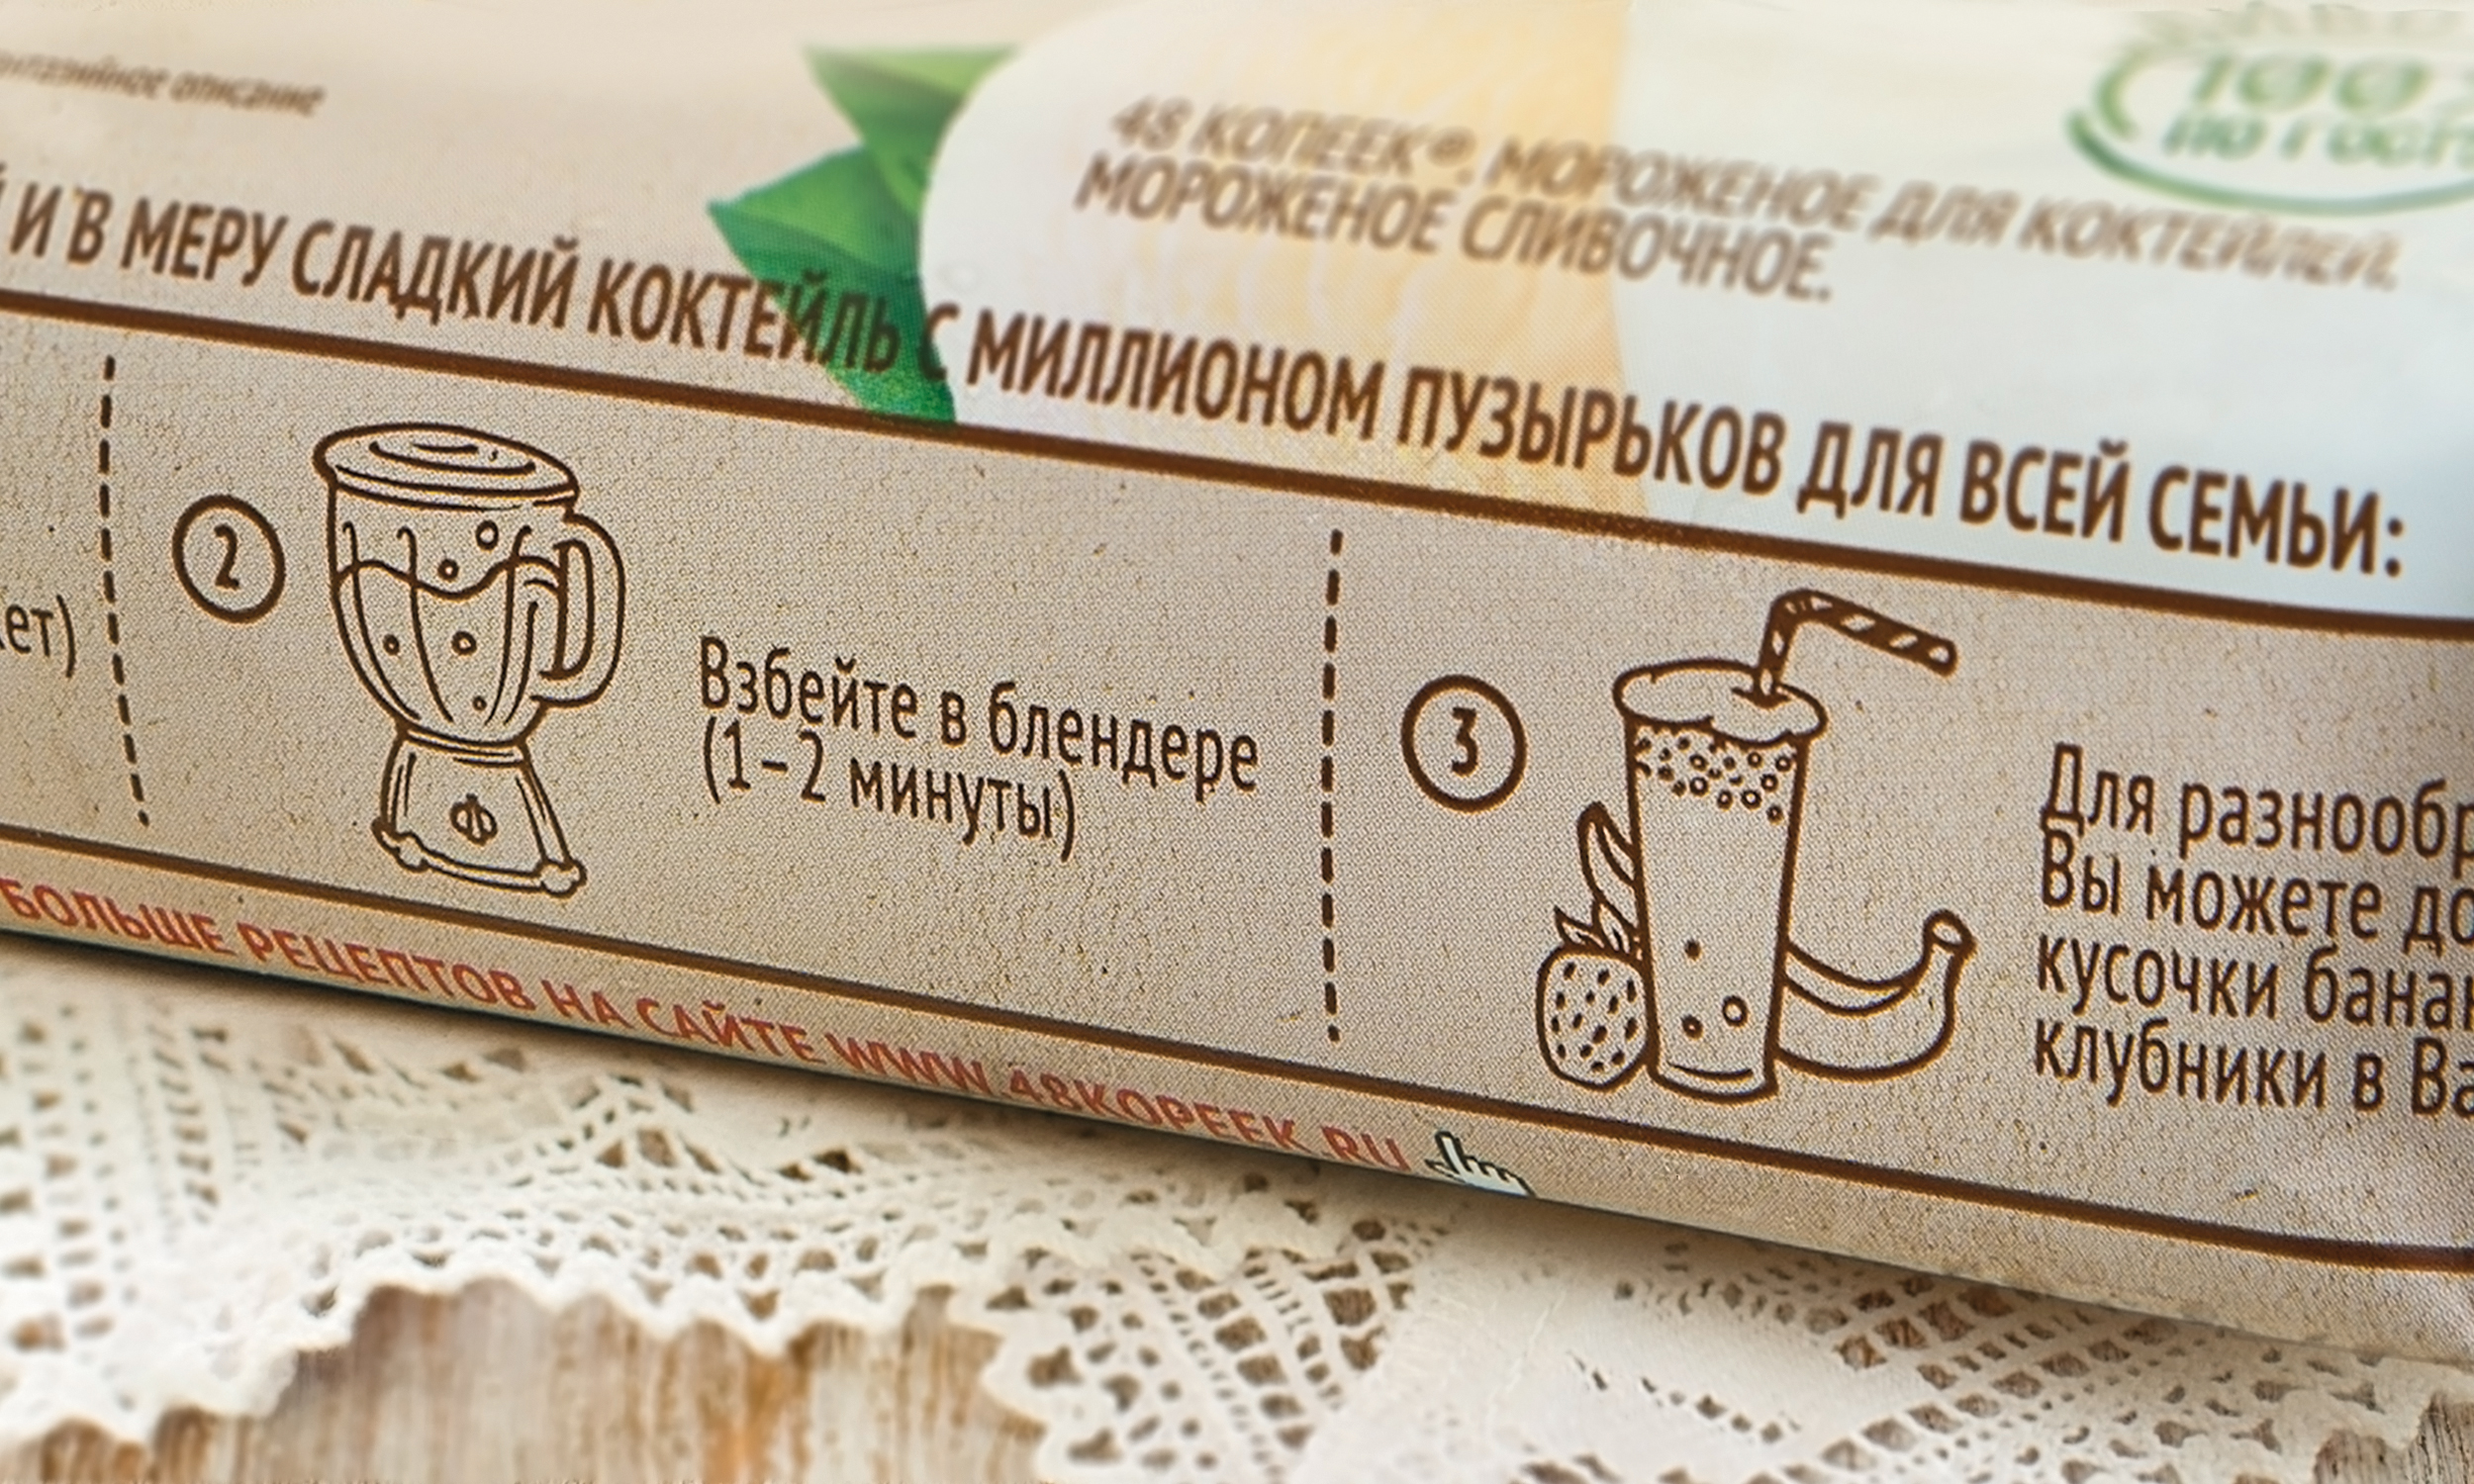 Дизайн упаковки нового продукта Нестле - мороженое для коктейлей 48 КОПЕЕК, разработанное брендинговым агентством Depot WP